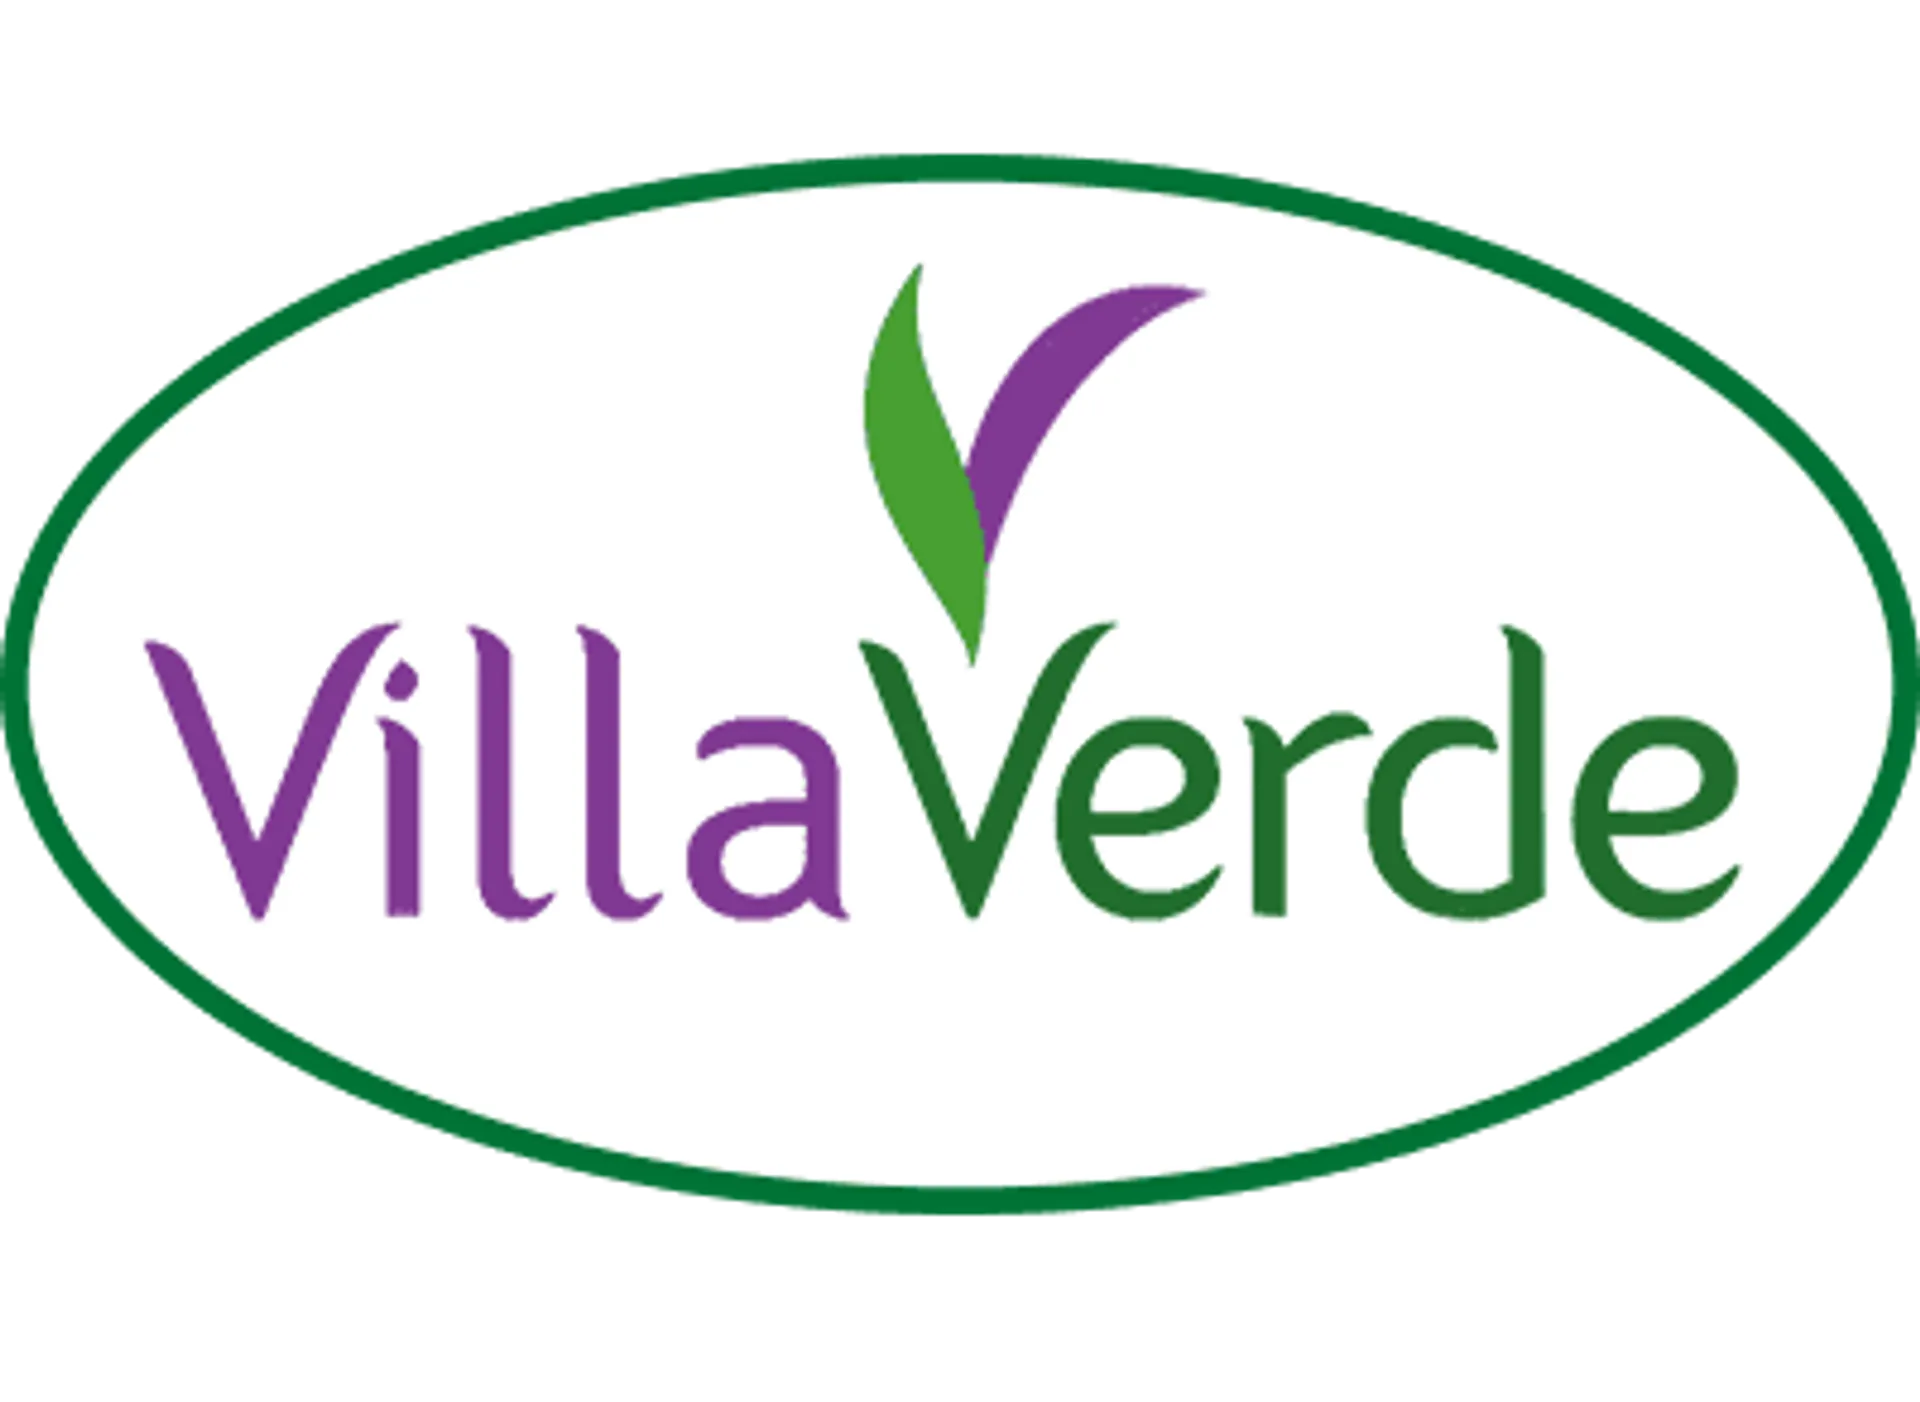 VILLAVERDE logo